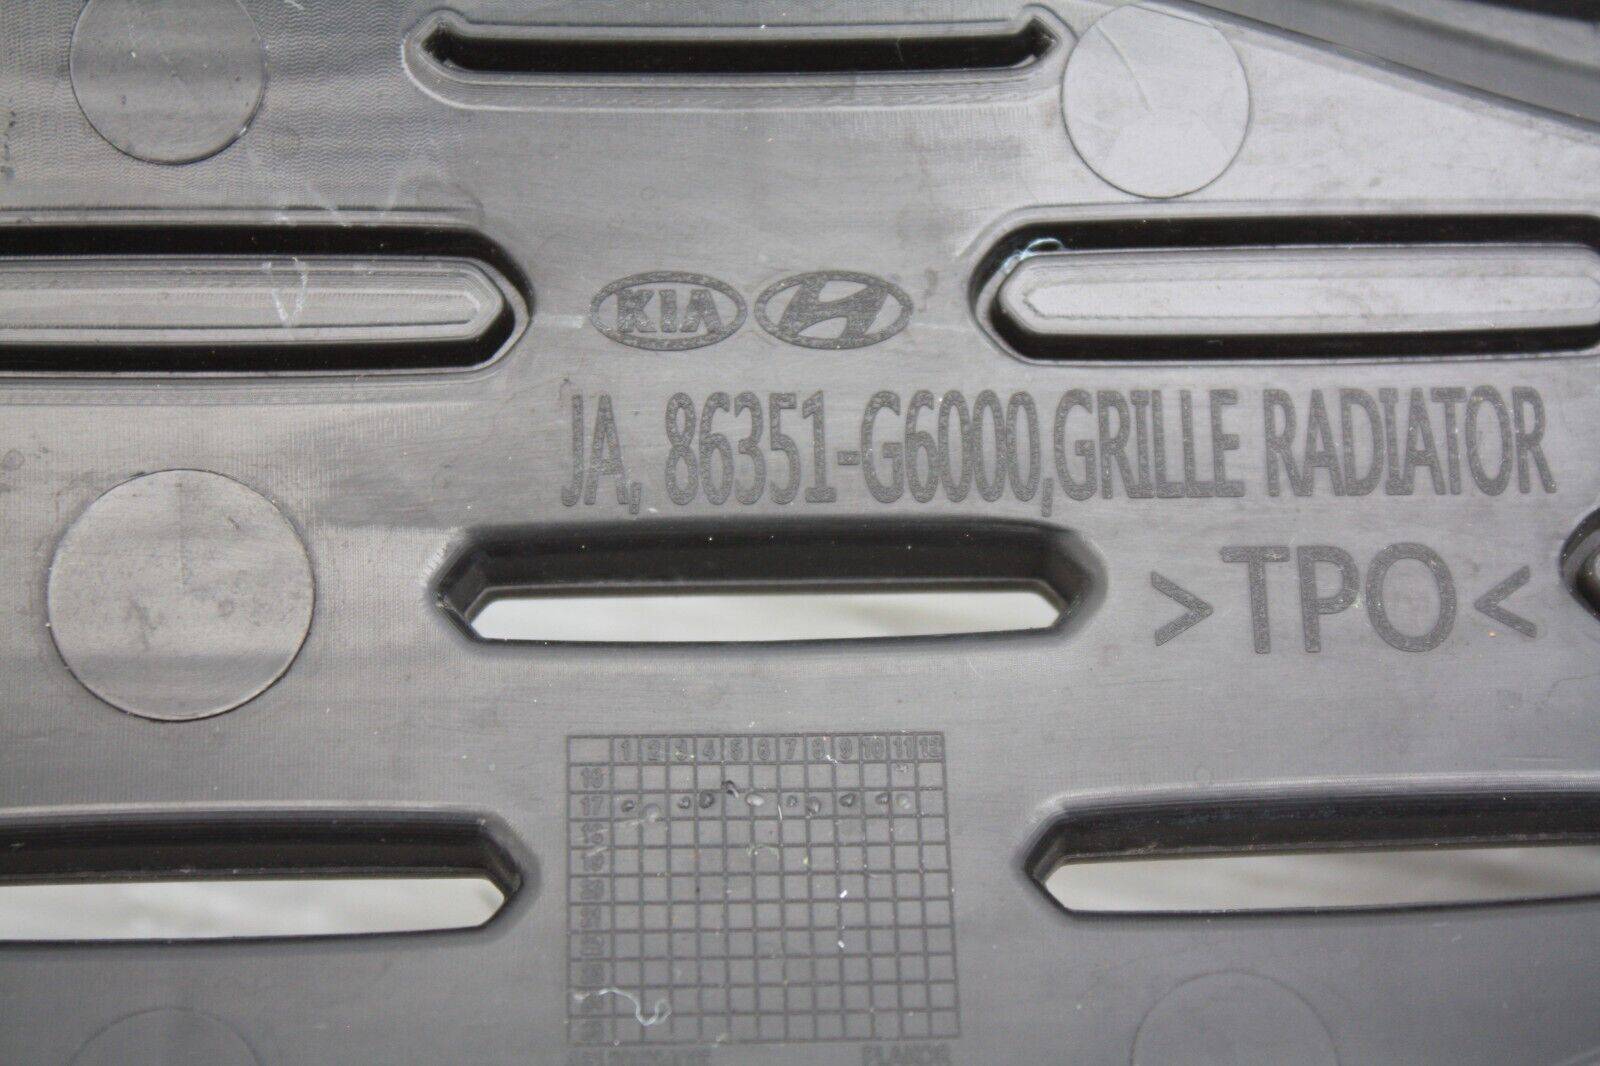 Kia-Picanto-Front-Bumper-Upper-Grill-2017-TO-2021-86351-G6000-Genuine-175765098602-9